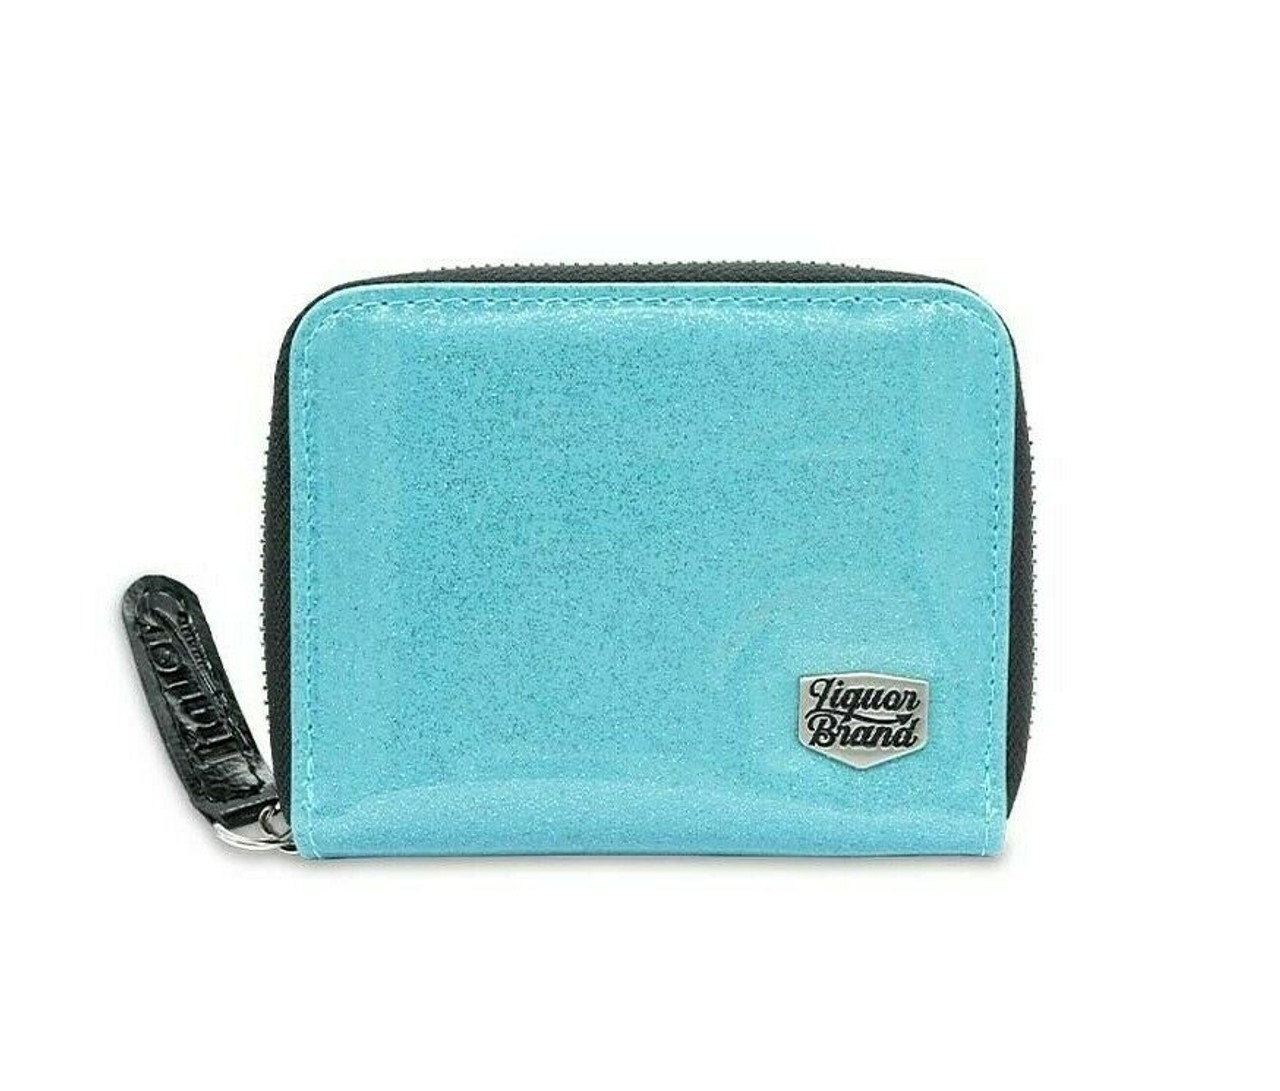 Compact Zipper Wallet – Purse & Clutch